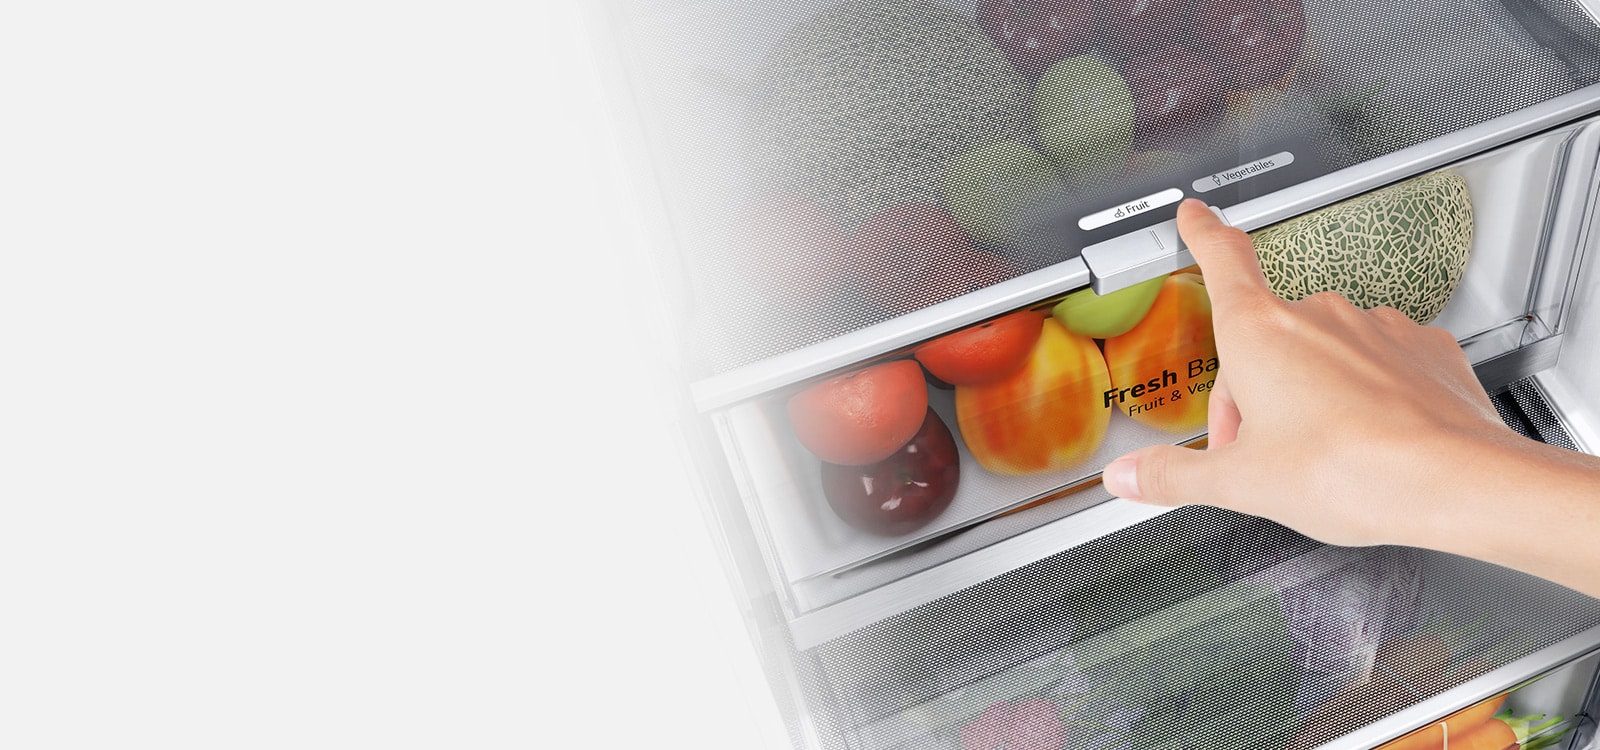 Các ngăn kéo dưới cùng của tủ lạnh chứa đầy các sản phẩm tươi sống đầy màu sắc. Hình ảnh bên trong phóng to cần điều khiển để chọn độ ẩm tối ưu để giữ cho sản phẩm tươi ngon.